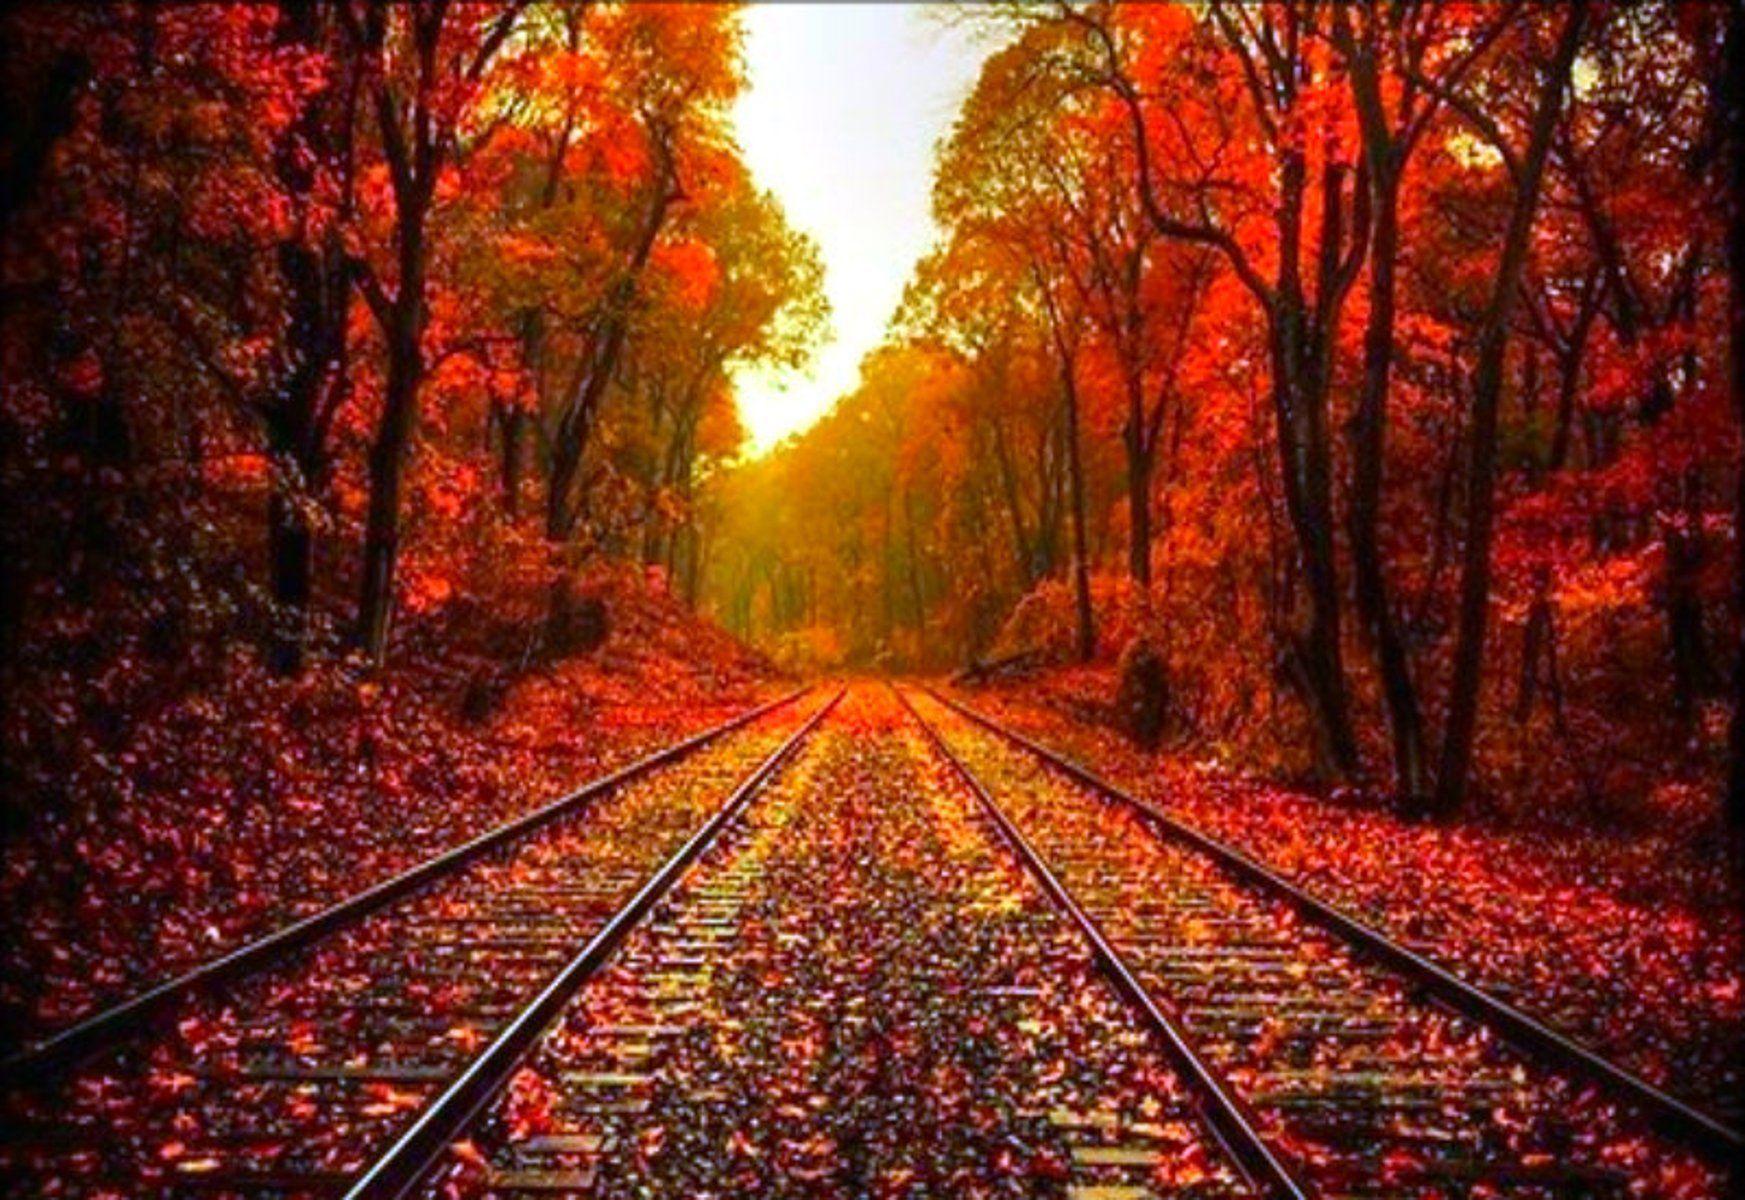 Beautiful Fall Background